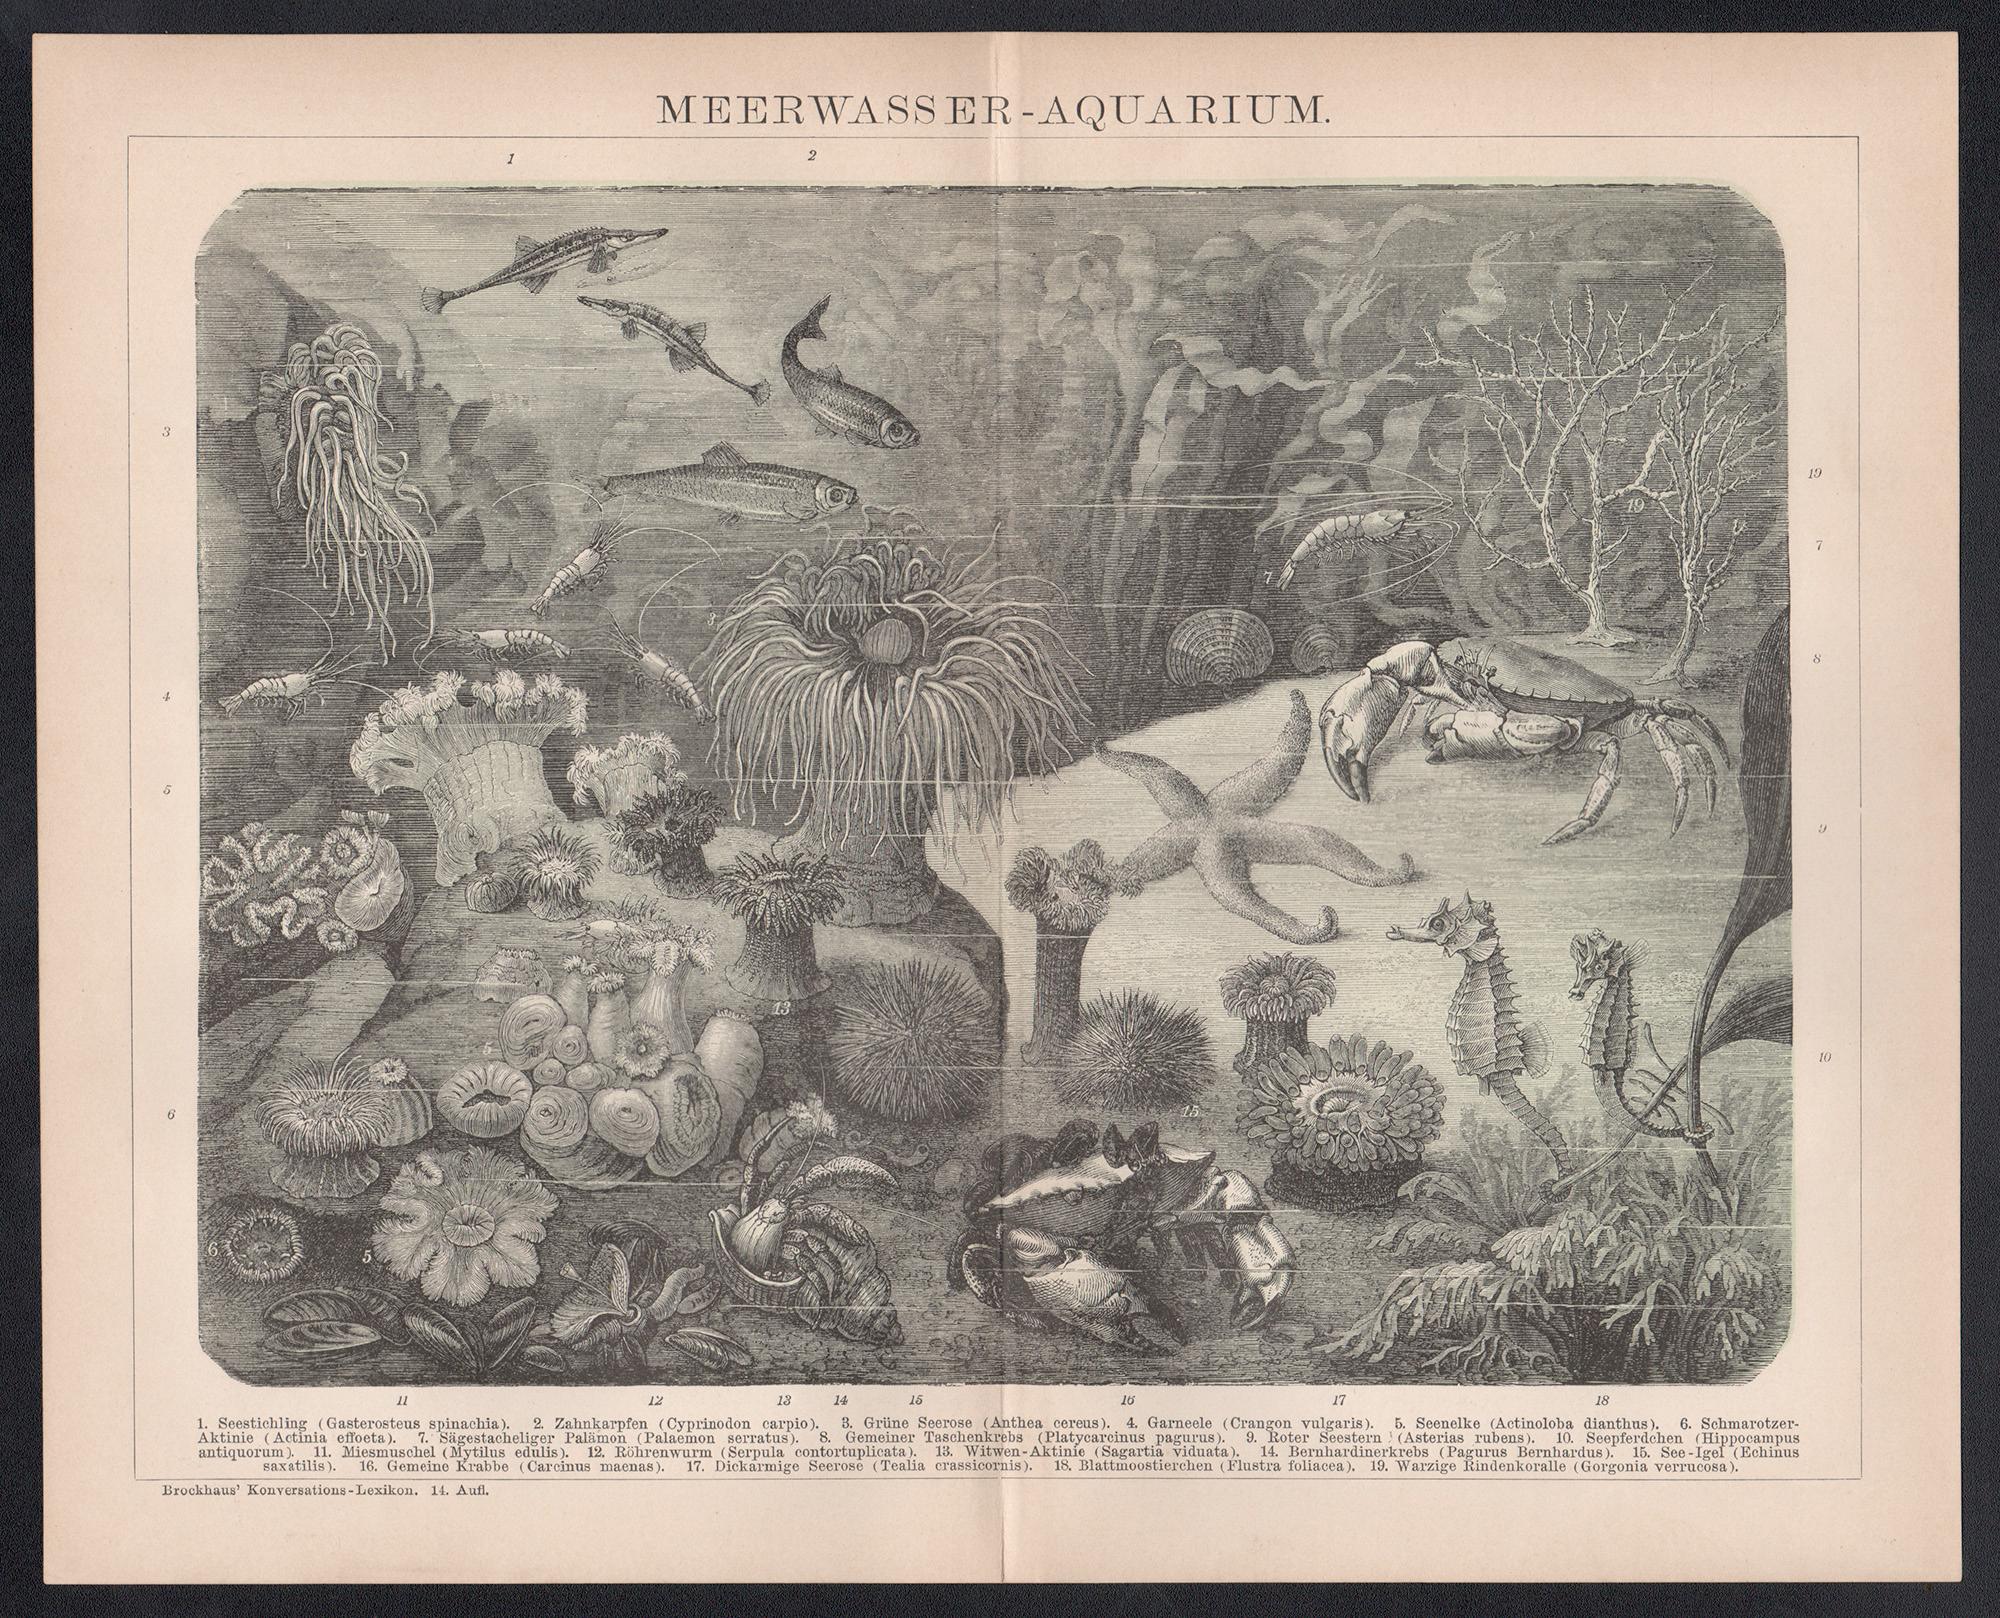 Meerwasser - Aquarium, gravure allemande ancienne de vie marine sous-marine - Print de Unknown